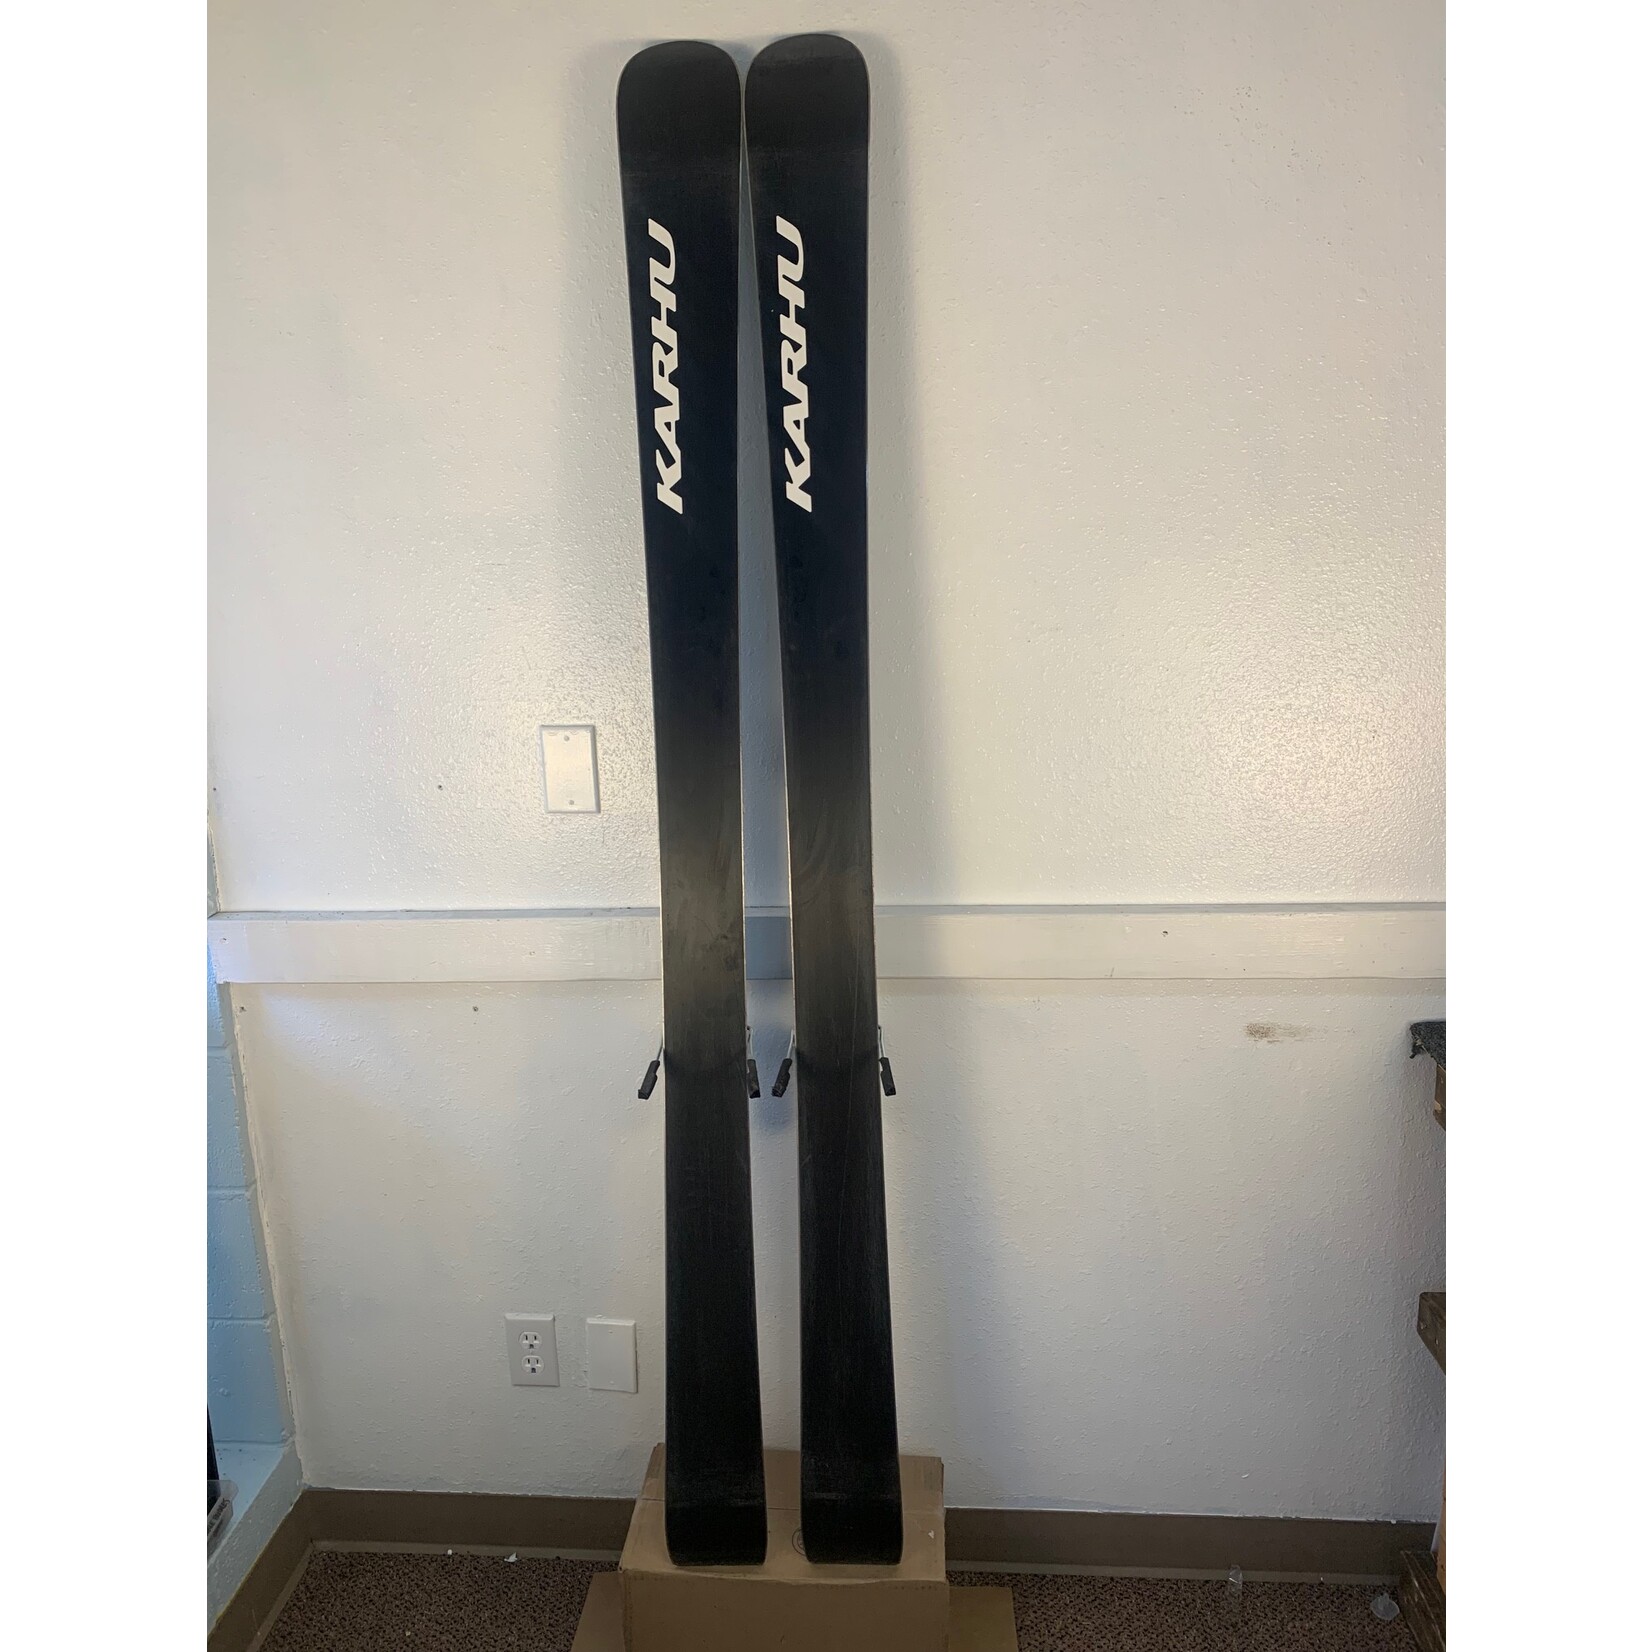 Karhu Karhu BC 100 Skis + Salomon 12 Bindings, Size 186, Set for 28.5 Boots